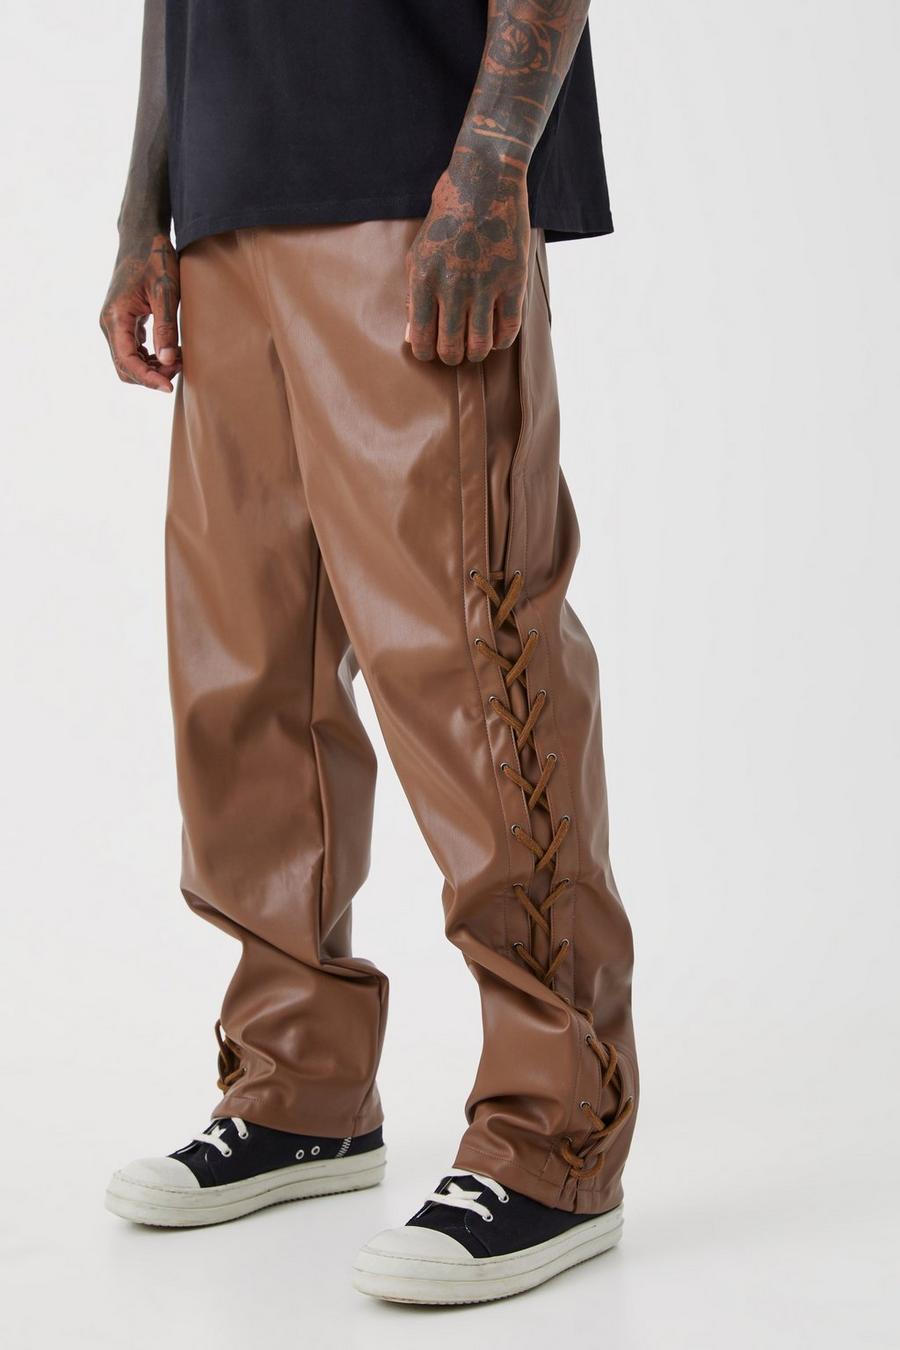 Pantaloni Slim Fit fissi in PU con inserti in pizzo, Chocolate marrón